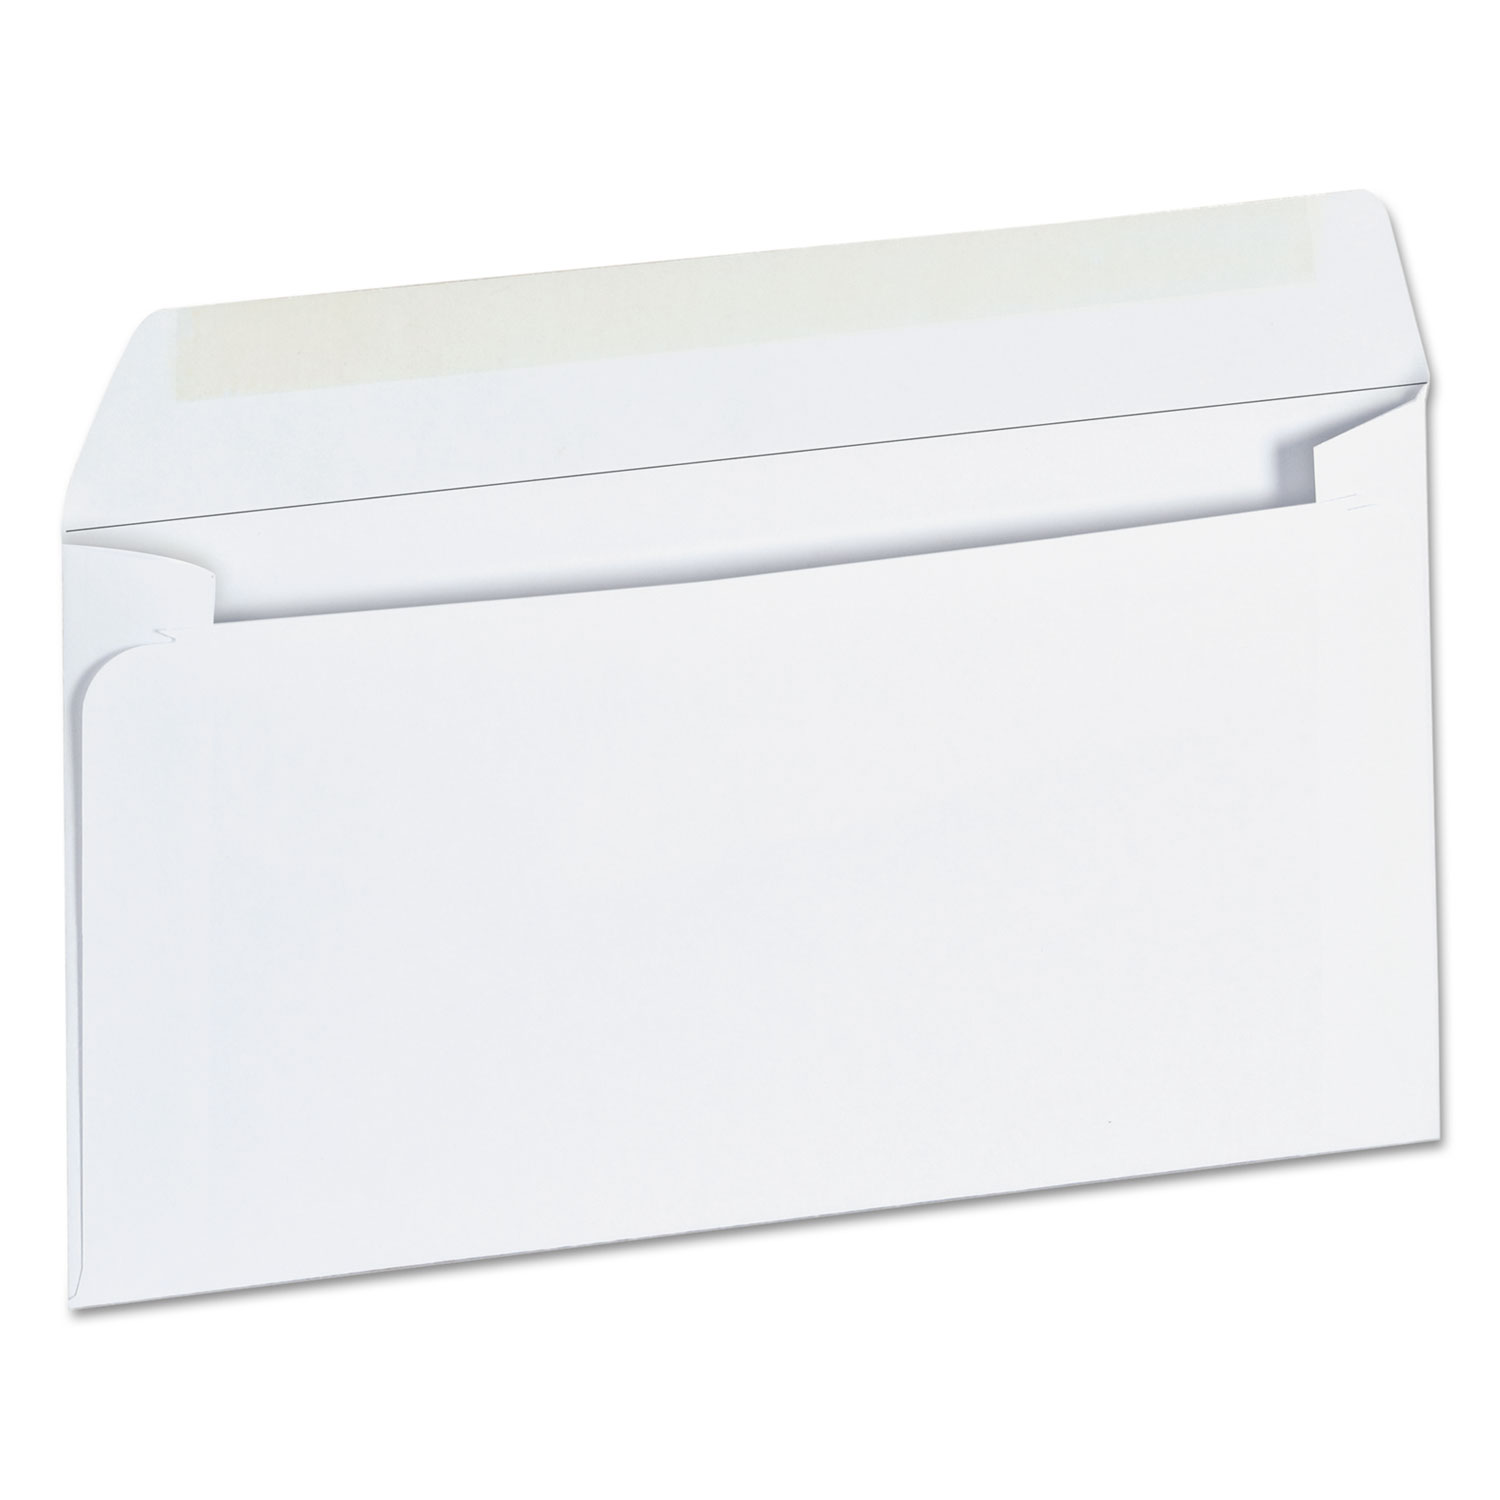  Universal UNV35206 Business Envelope, #6 3/4, Square Flap, Gummed Closure, 3.63 x 6.5, White, 500/Box (UNV35206) 